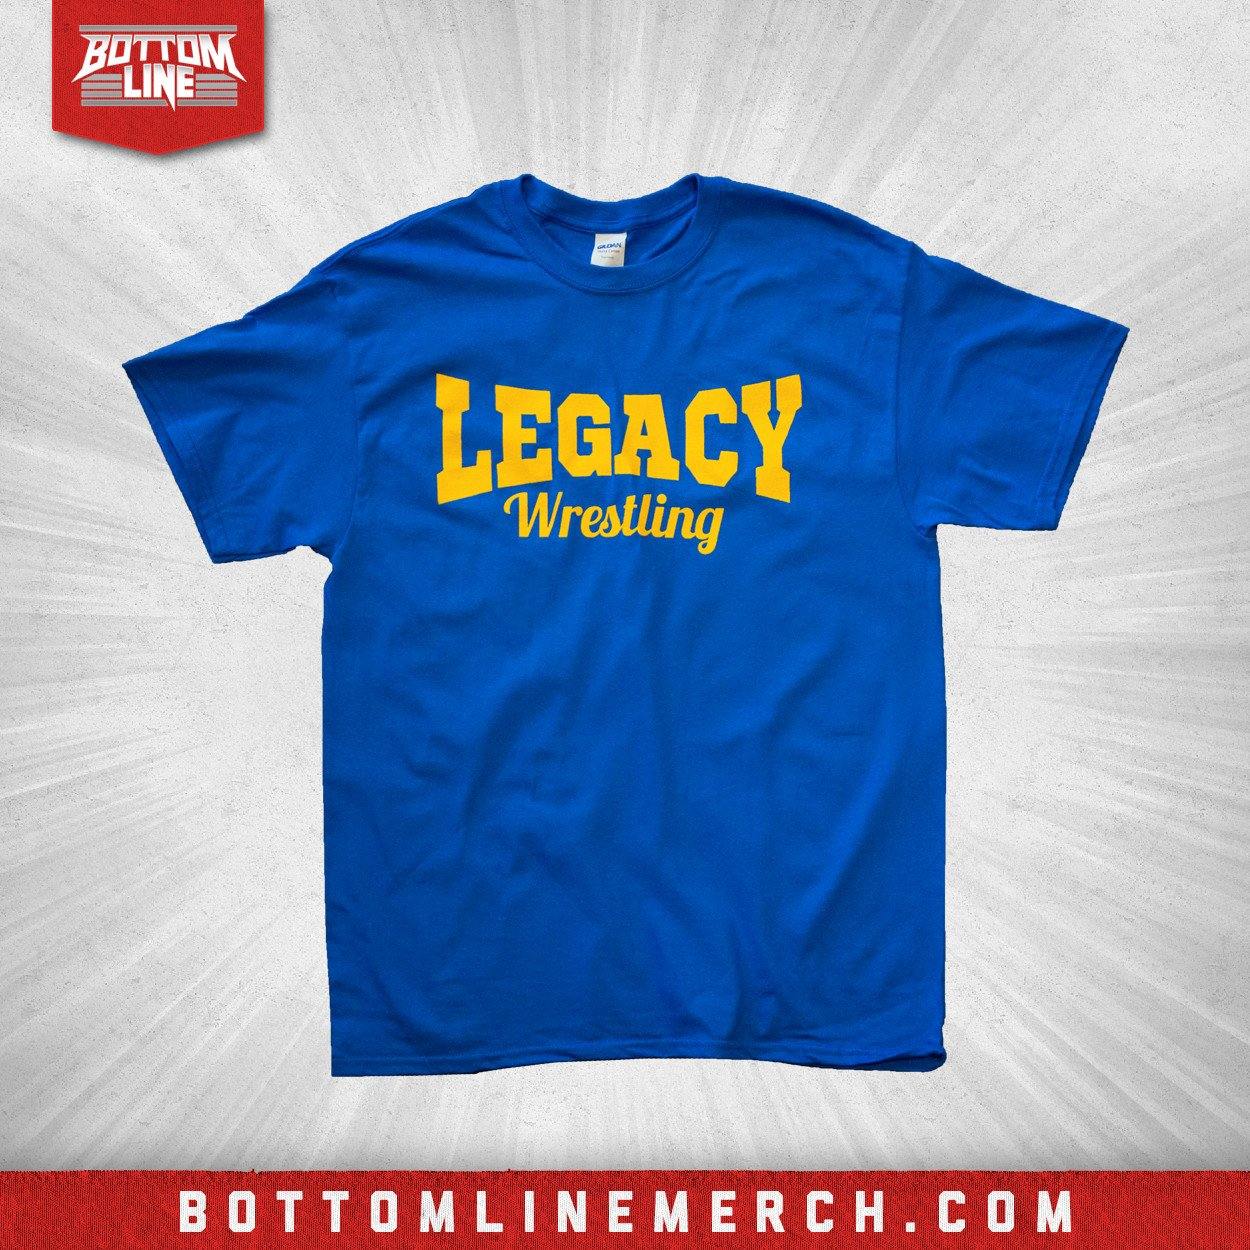 Buy Now – Legacy Wrestling "Logo" Blue Shirt – Wrestler & Wrestling Merch – Bottom Line